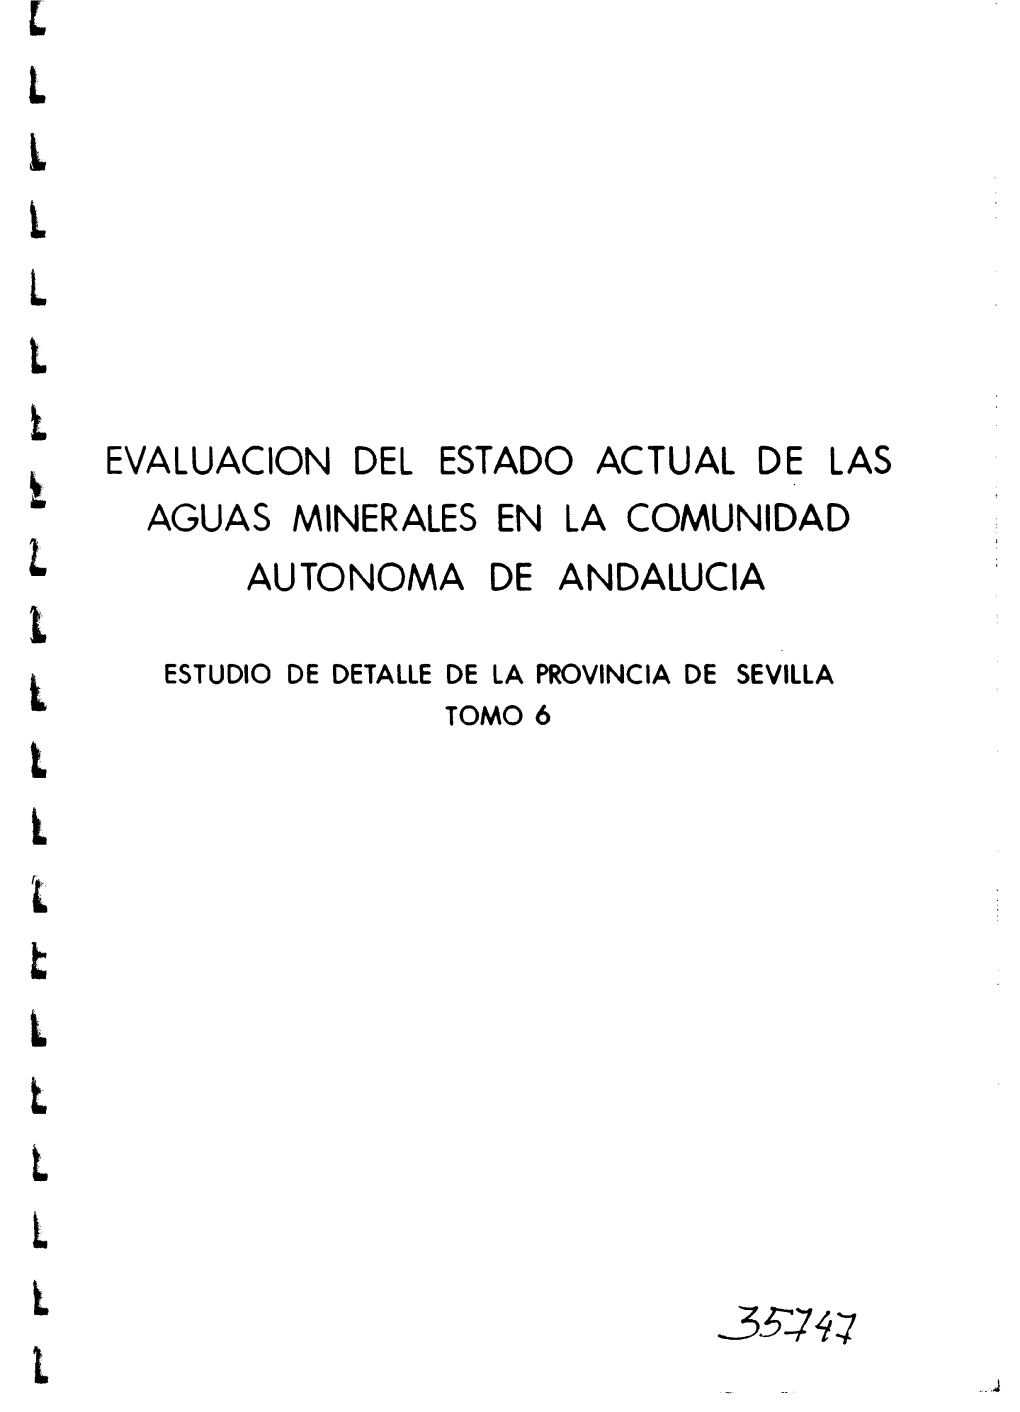 Evaluacion Del Estado Actual De Las Aguas Minerales En La Comunidad Autonoma De Andalucia